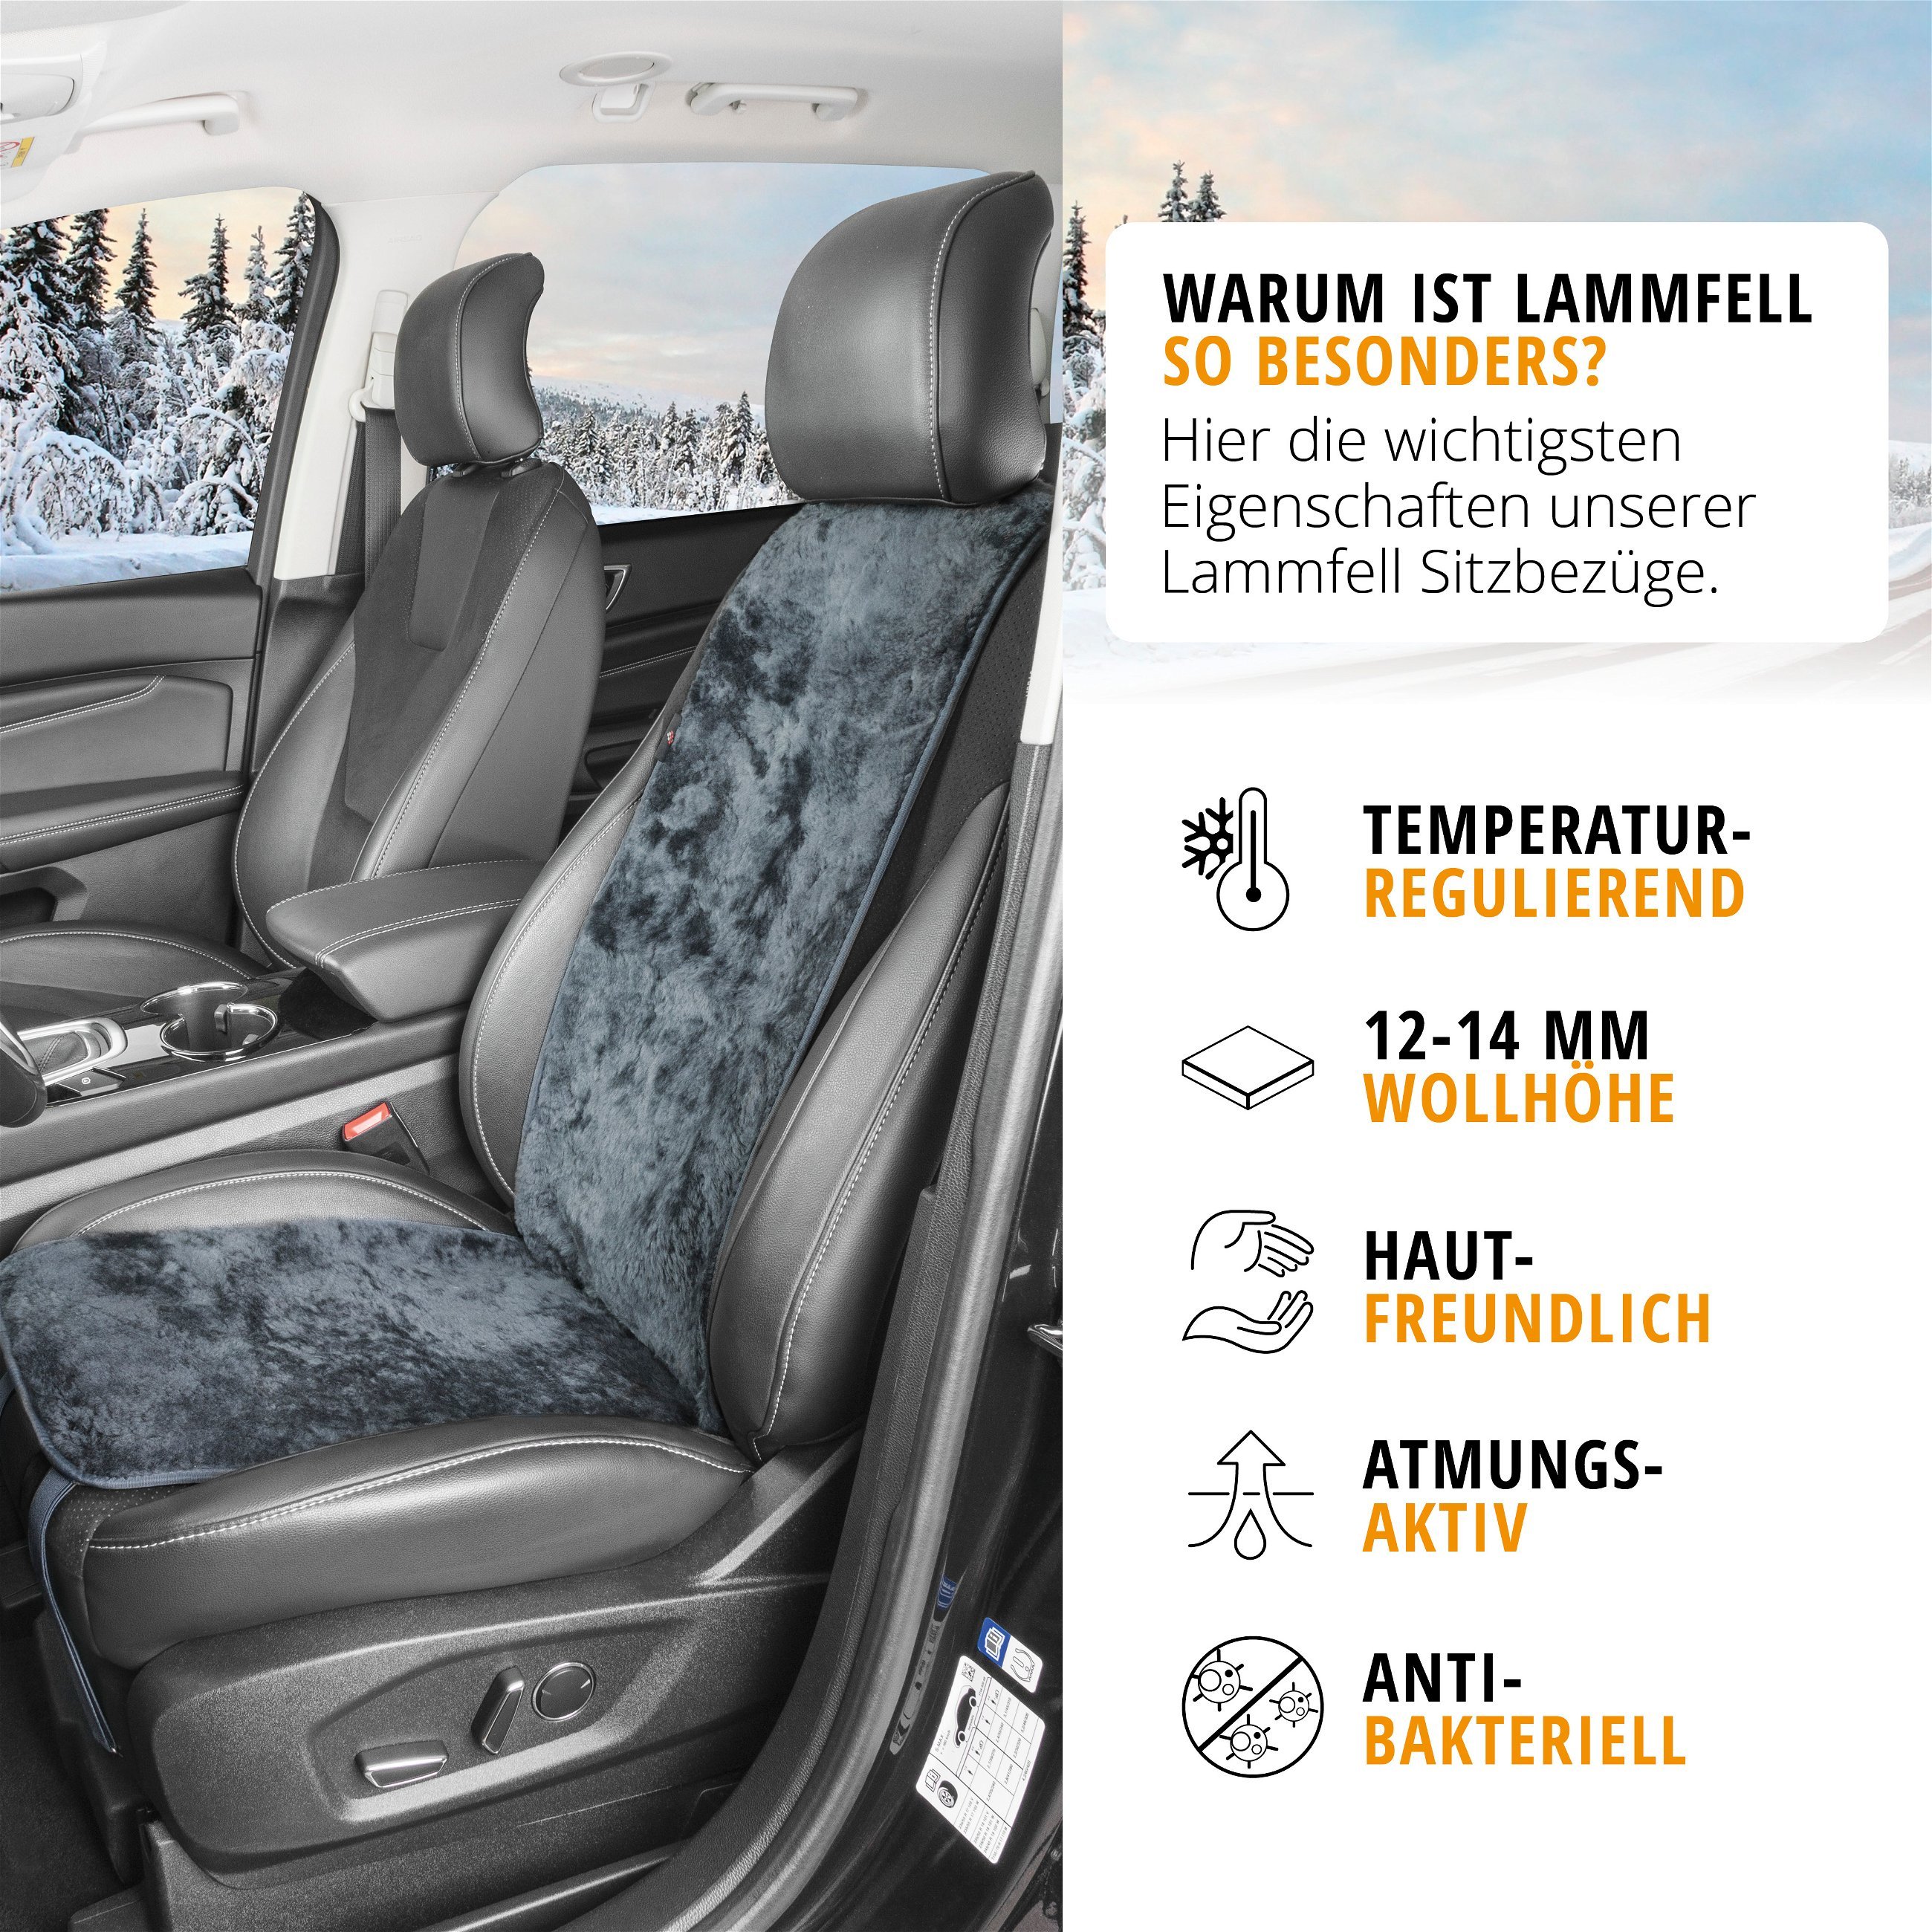 PKW Sitzauflage aus Lammfell Cosmo, Auto-Sitzaufleger, Lammfell-Sitzauflage anthrazit